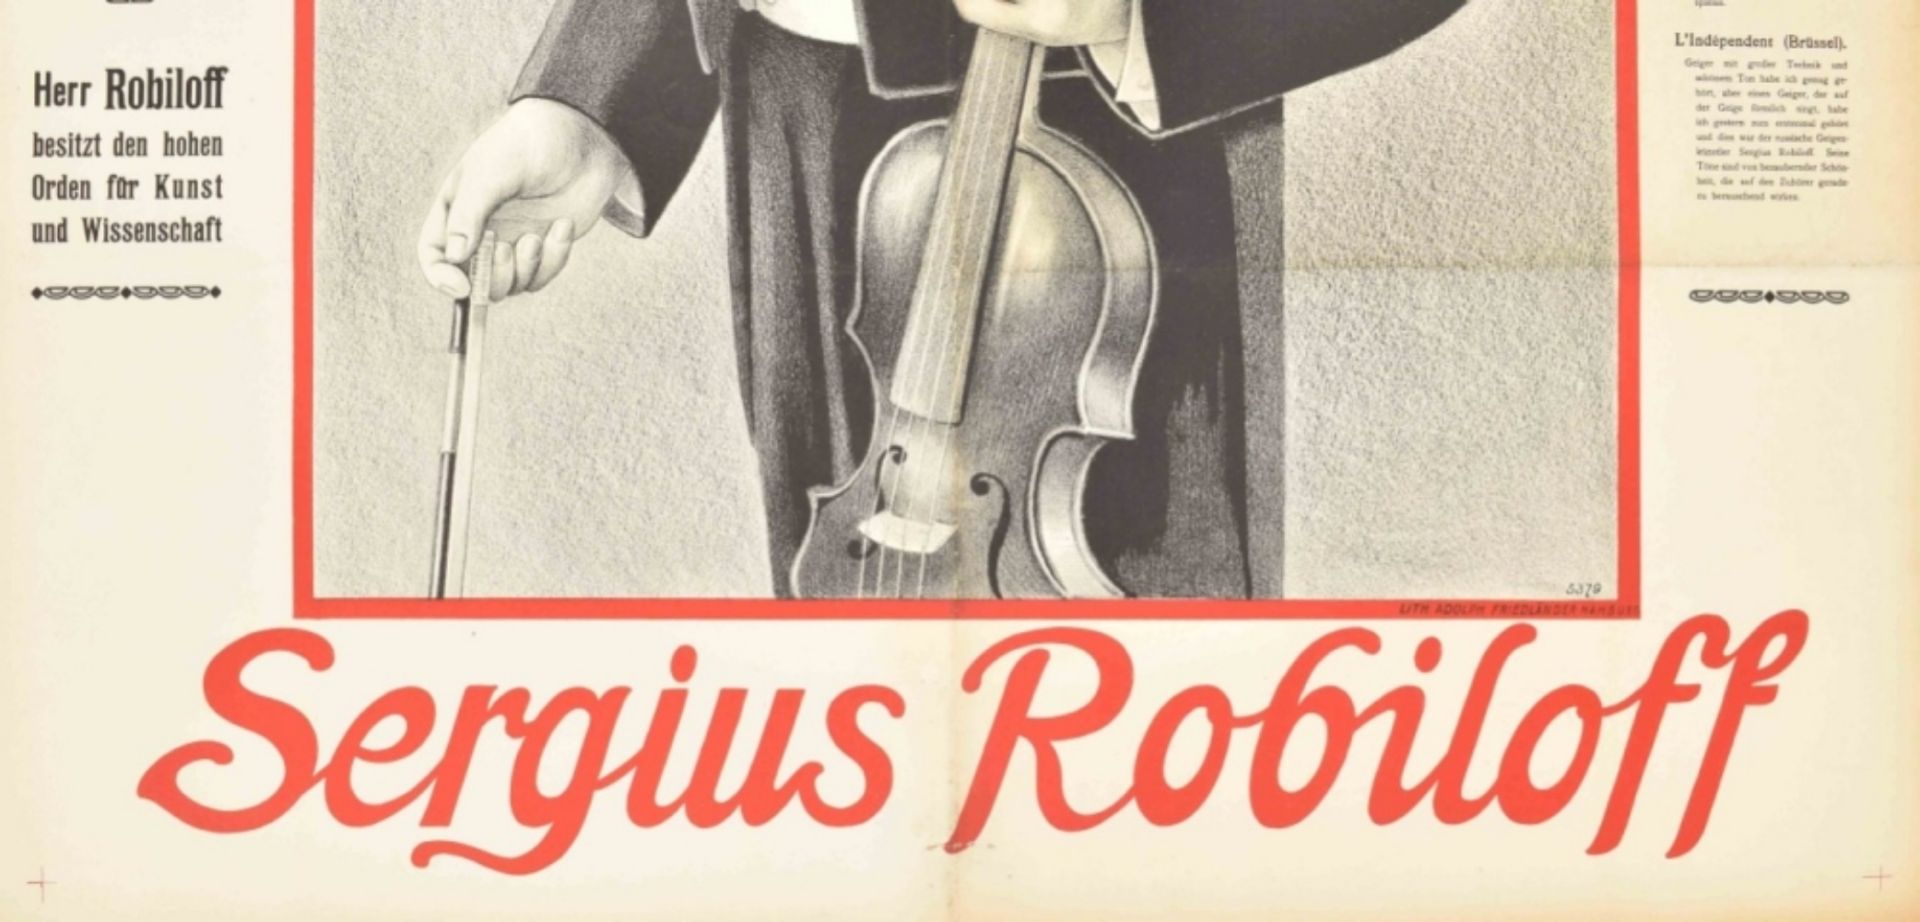 [Entertainment] Russia's greatest violinist. Sergius Robiloff Friedländer, Hamburg, 1911 - Bild 2 aus 6